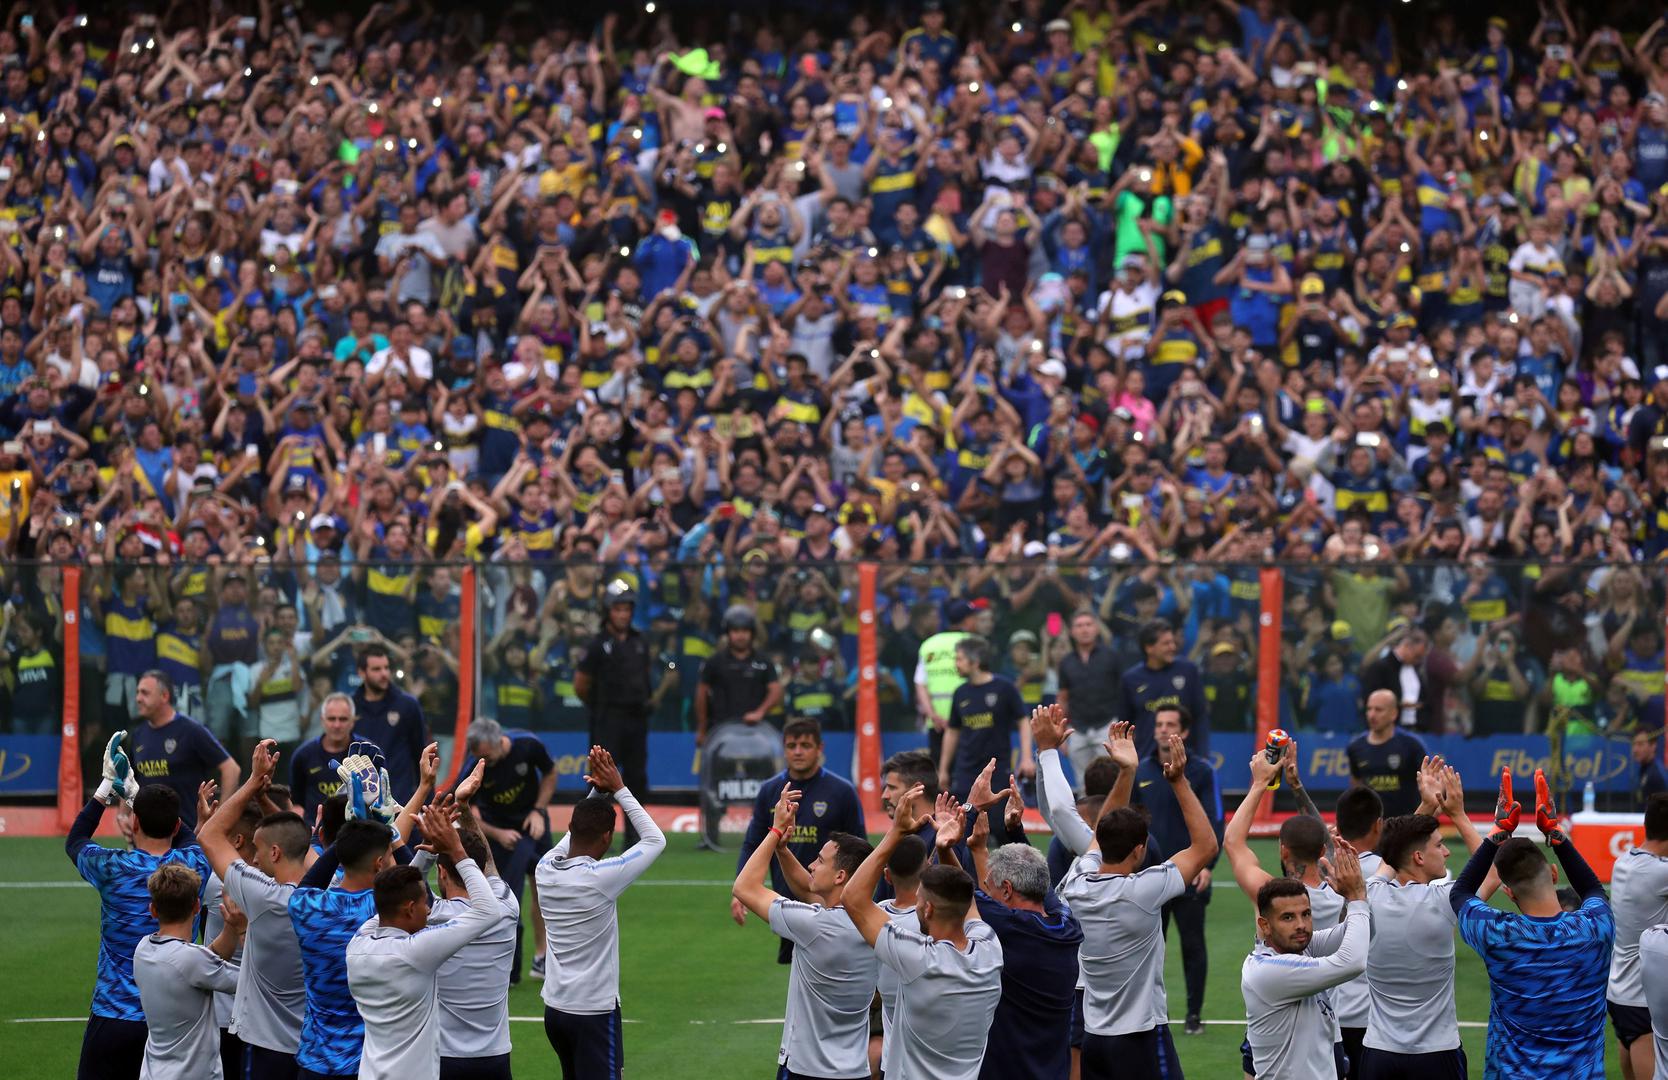 A uoči utakmice igrači Boca Juniors trenirali su pred svojim navijačima